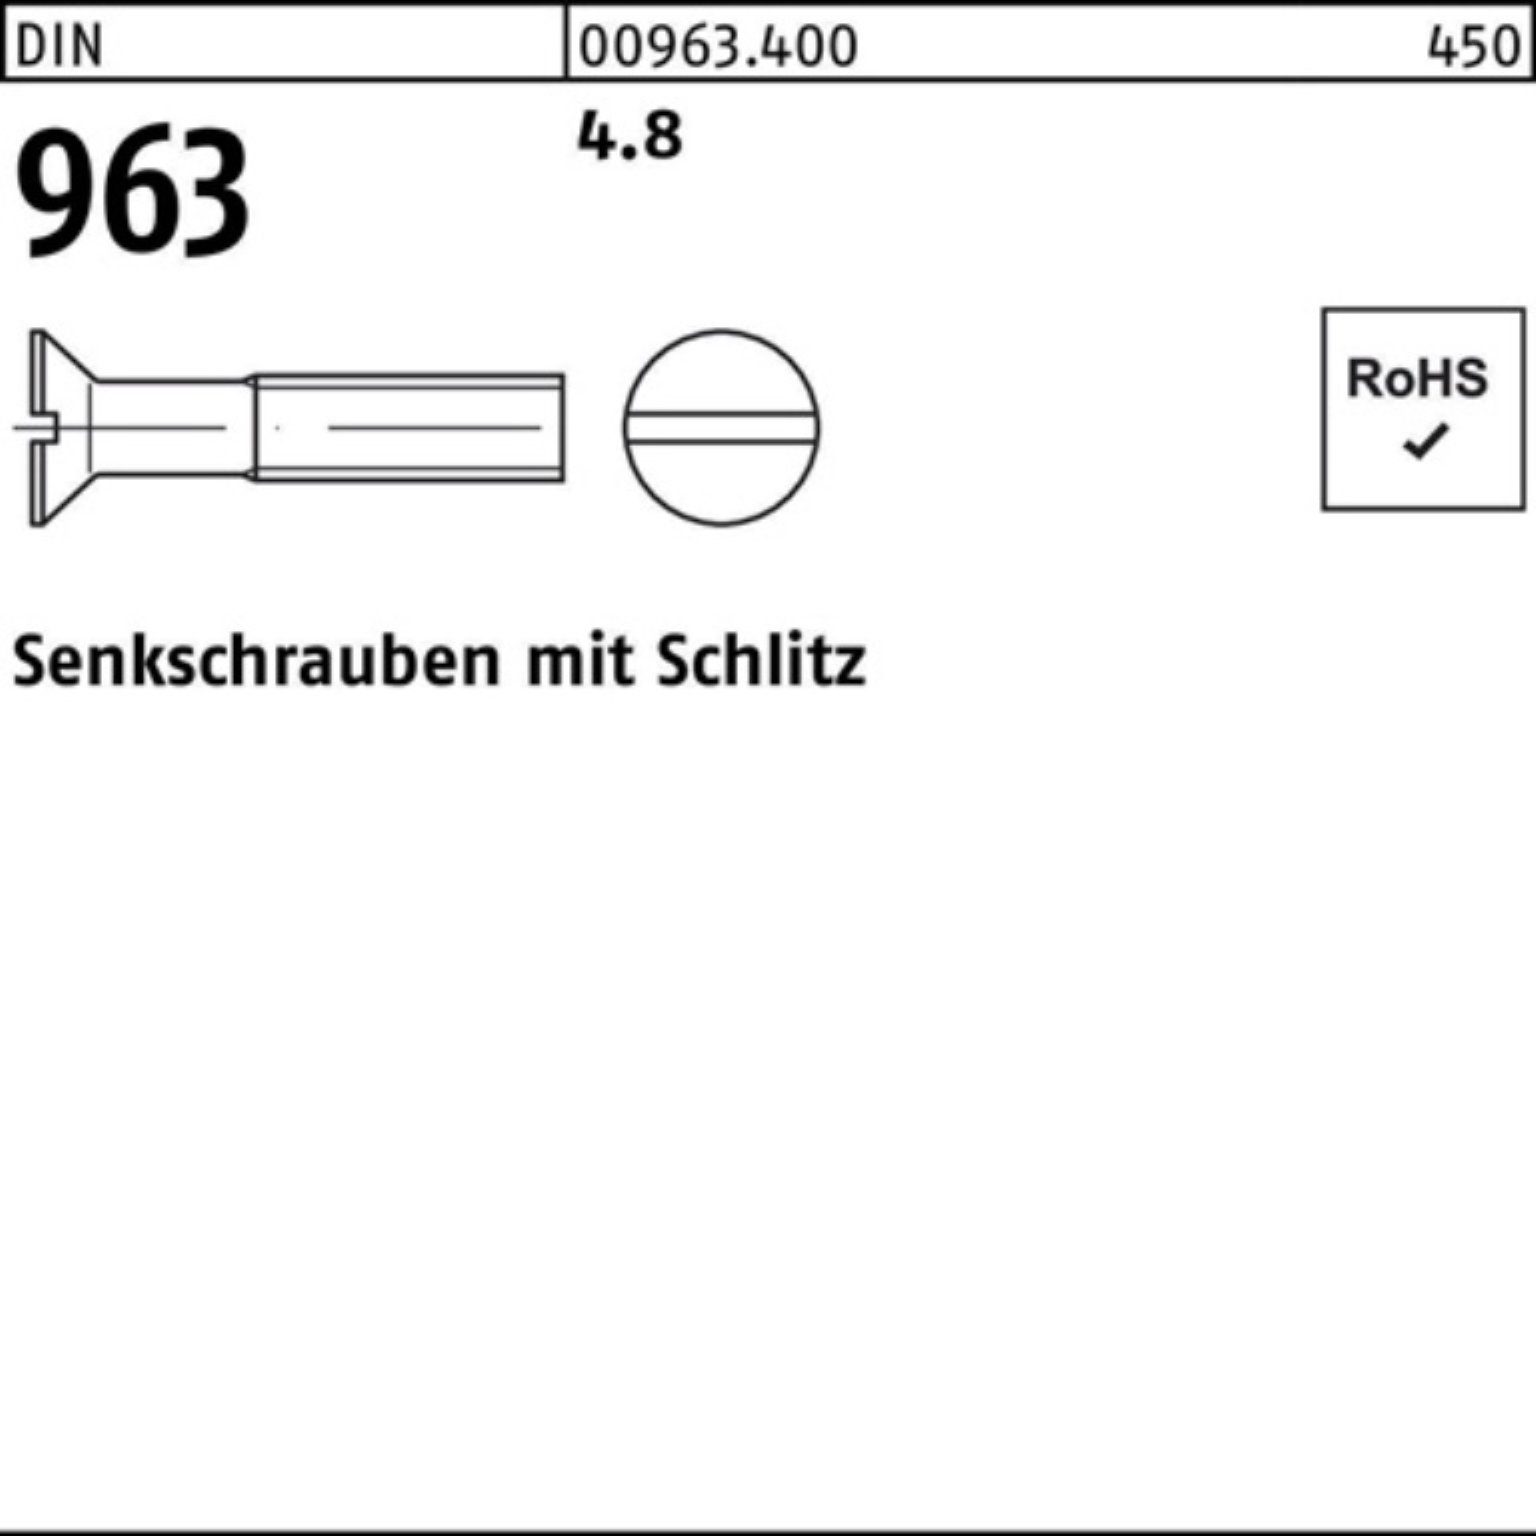 Reyher Senkschraube 500er 963 Schlitz DIN Stück 500 M8x DIN 25 Pack Senkschraube 963 4.8